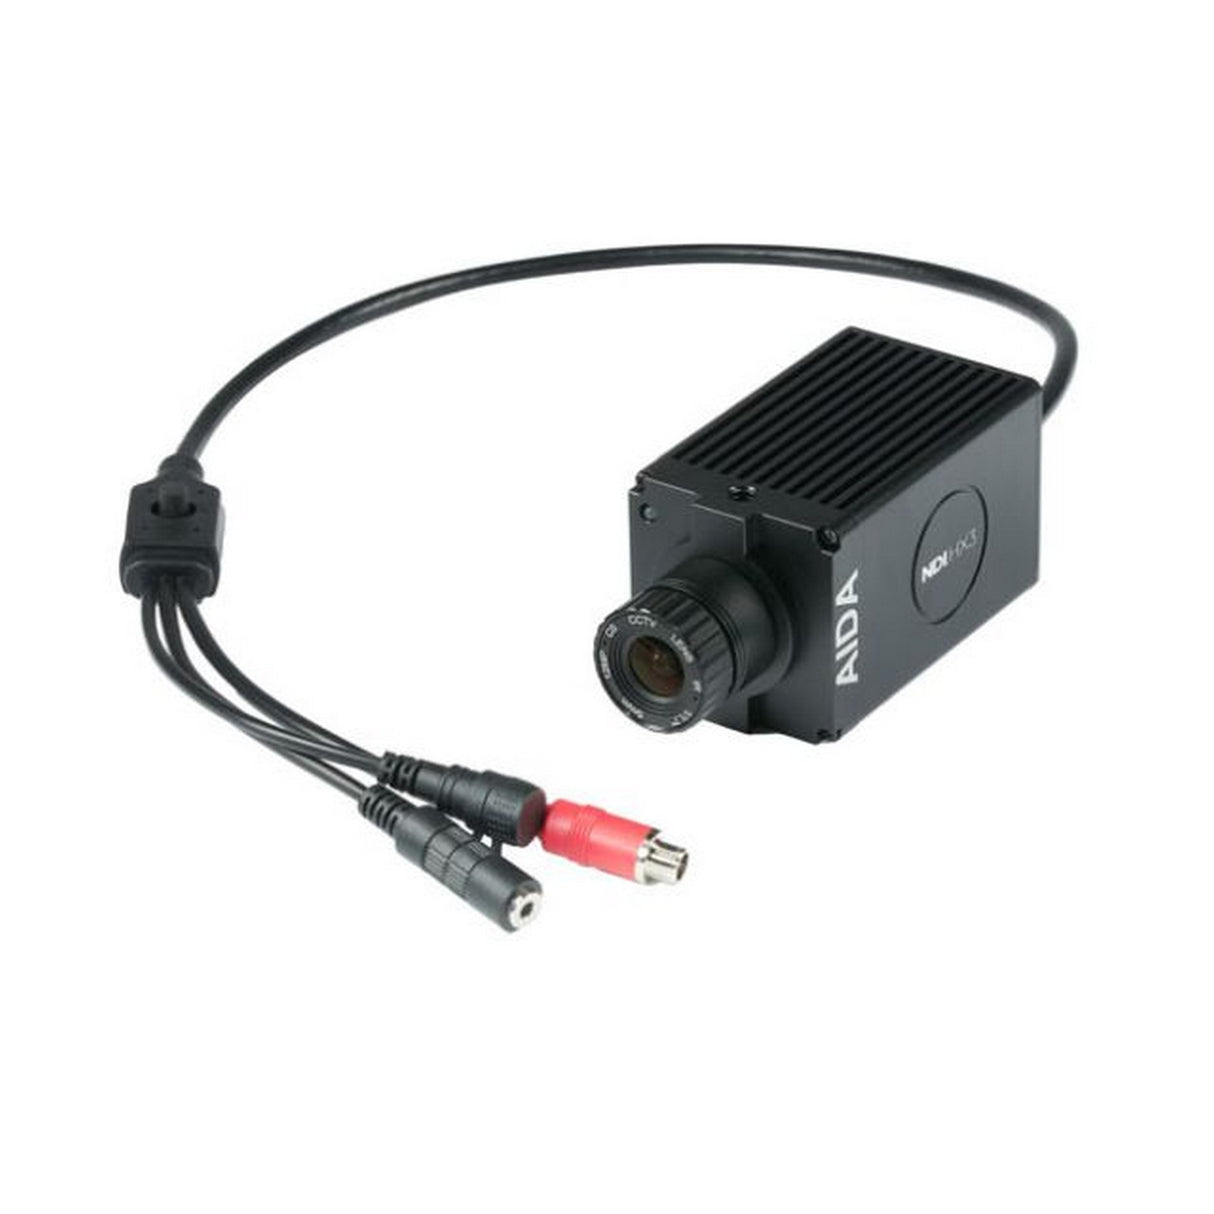 AIDA UHD-NDI3-300 UHD 4K/60 NDI HX3/IP/SRT/HDMI PoE POV Camera